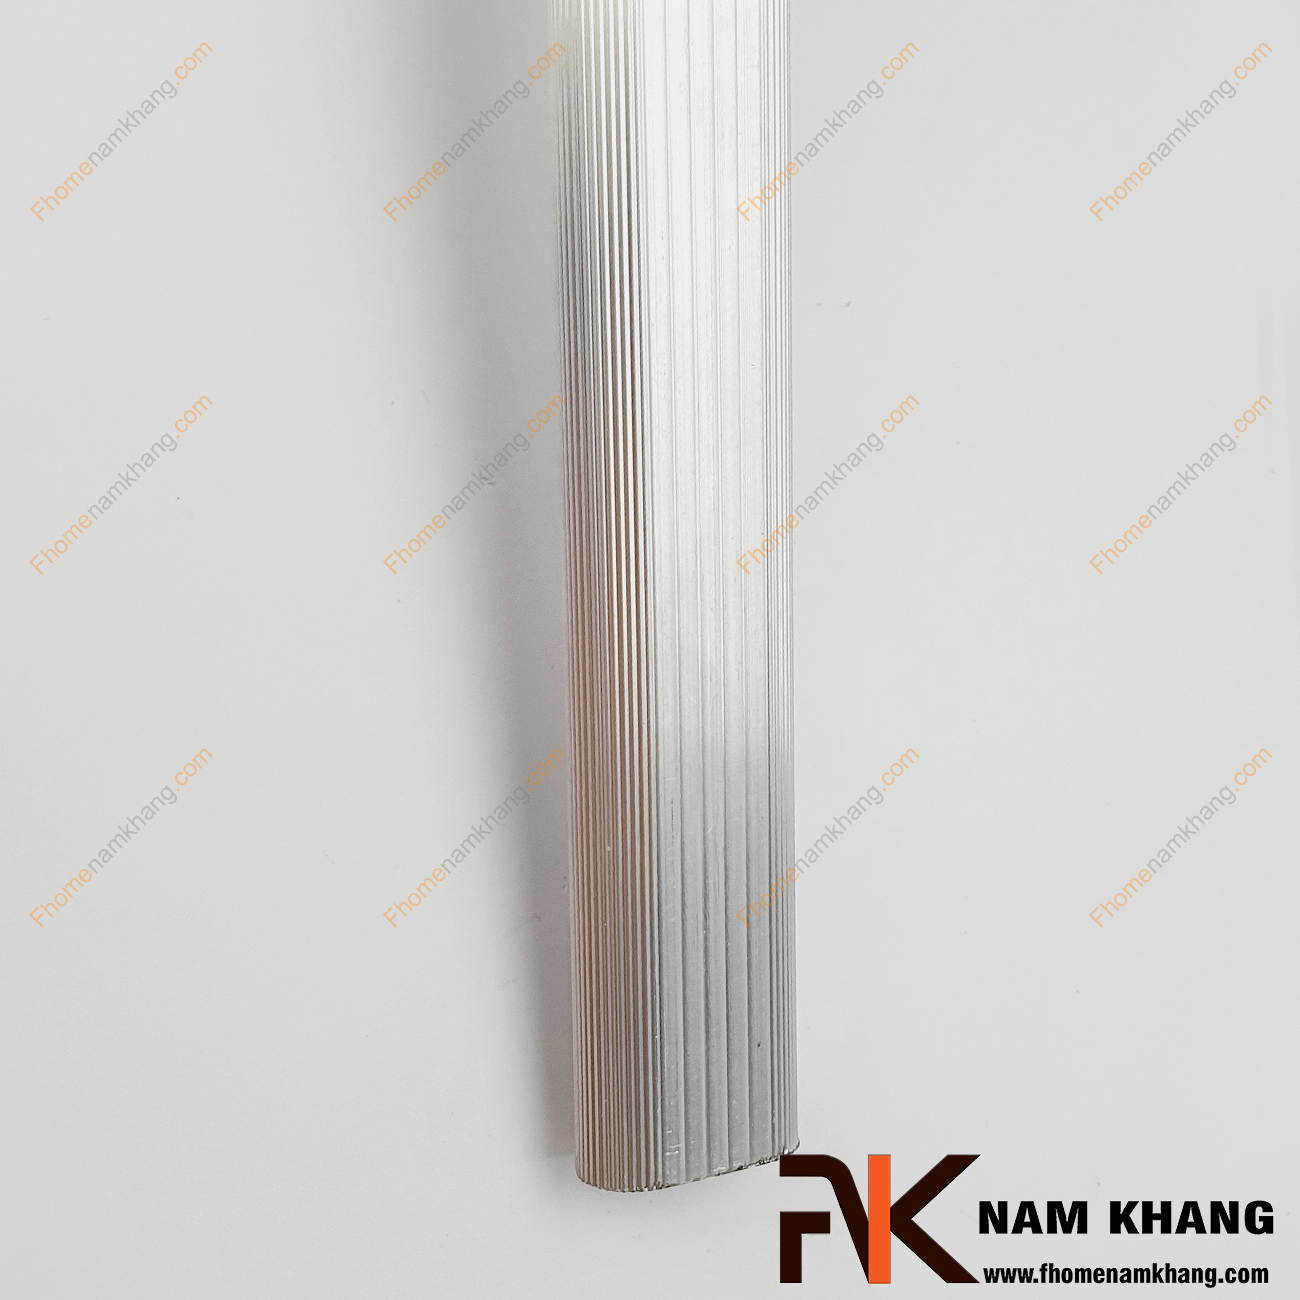 Thanh suốt treo quần áo oval NK702-3M là một sản phẩm sử dụng lắp thành bộ, thường lắp trong tủ quần áo hoặc lắp trên vách tường sử dụng để treo móc treo quần áo. 